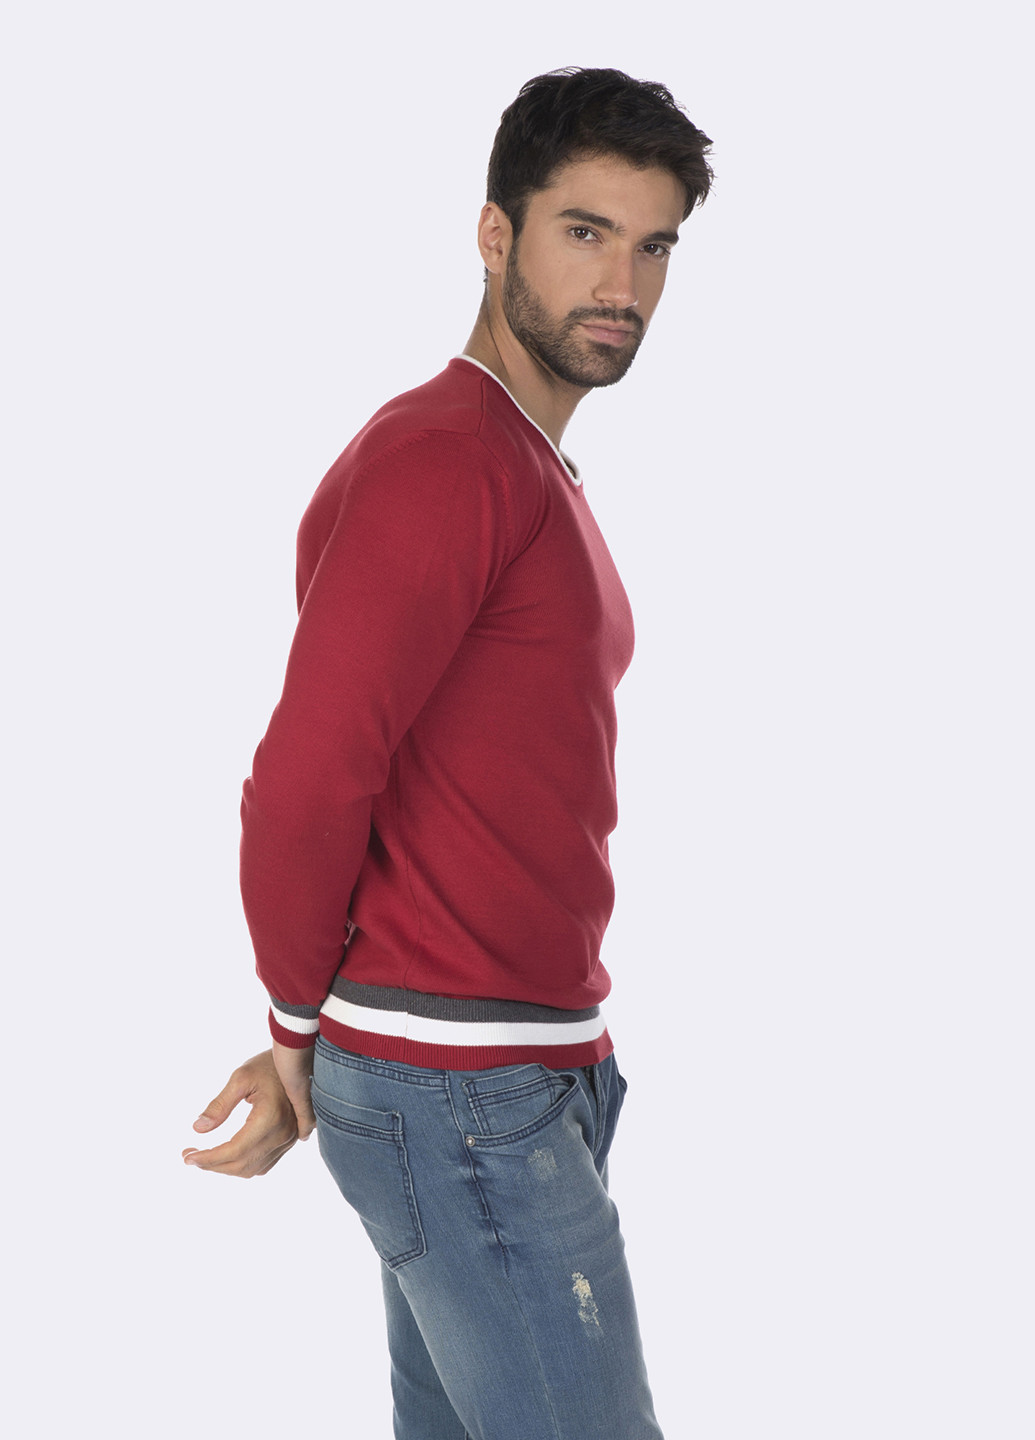 Червоний демісезонний пуловер пуловер Felix Hardy